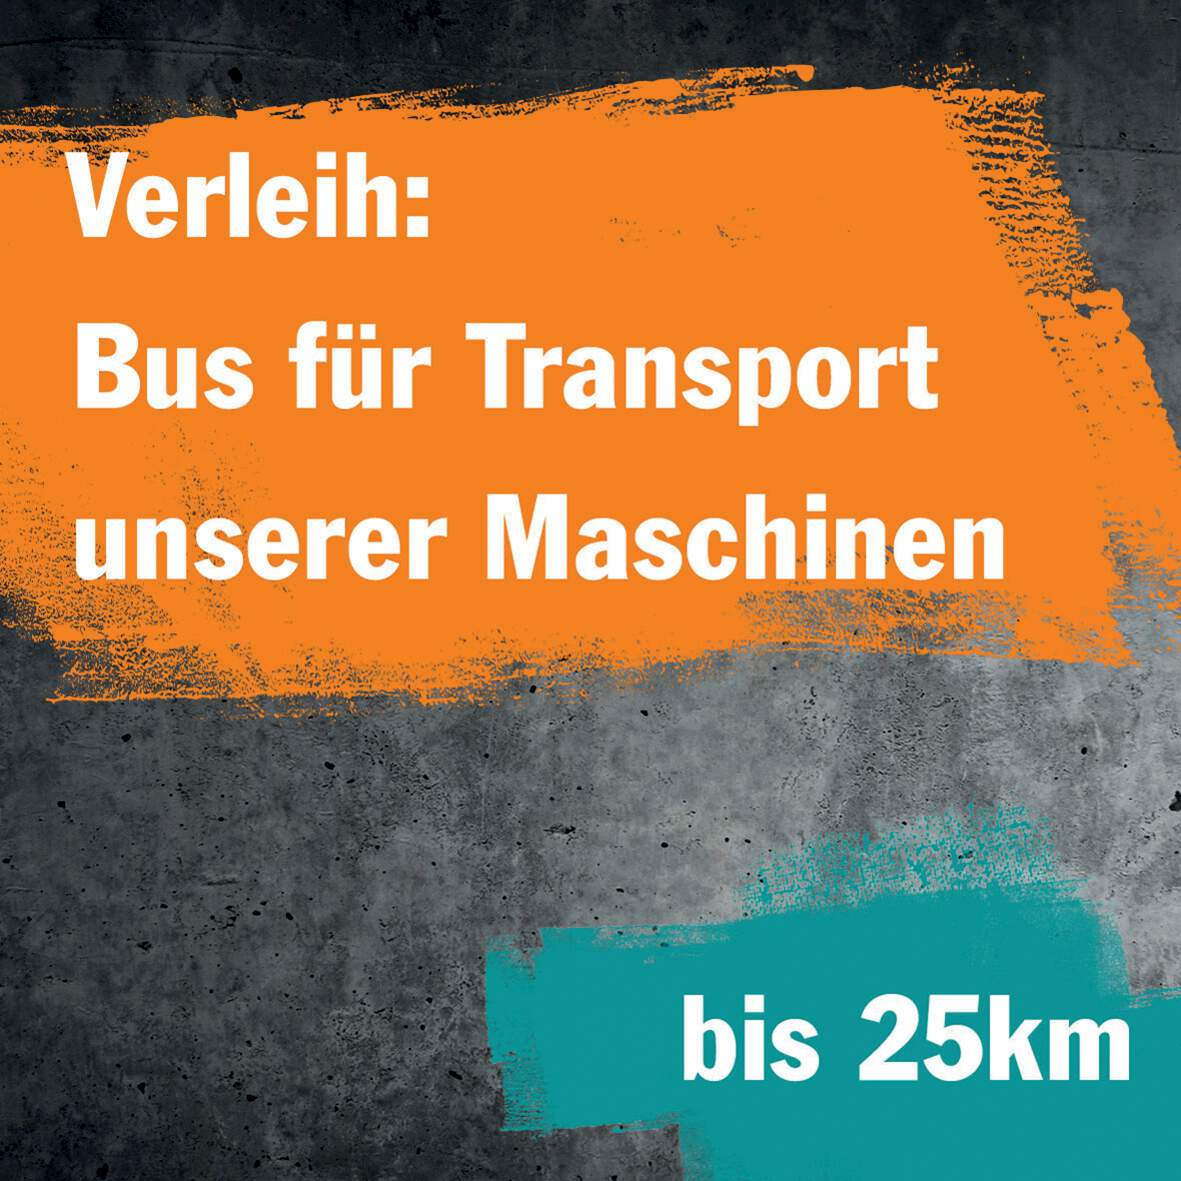 1256651 - Verleih: Bus für Transport unserer Maschinen (im Umkreis von max. 25 km)